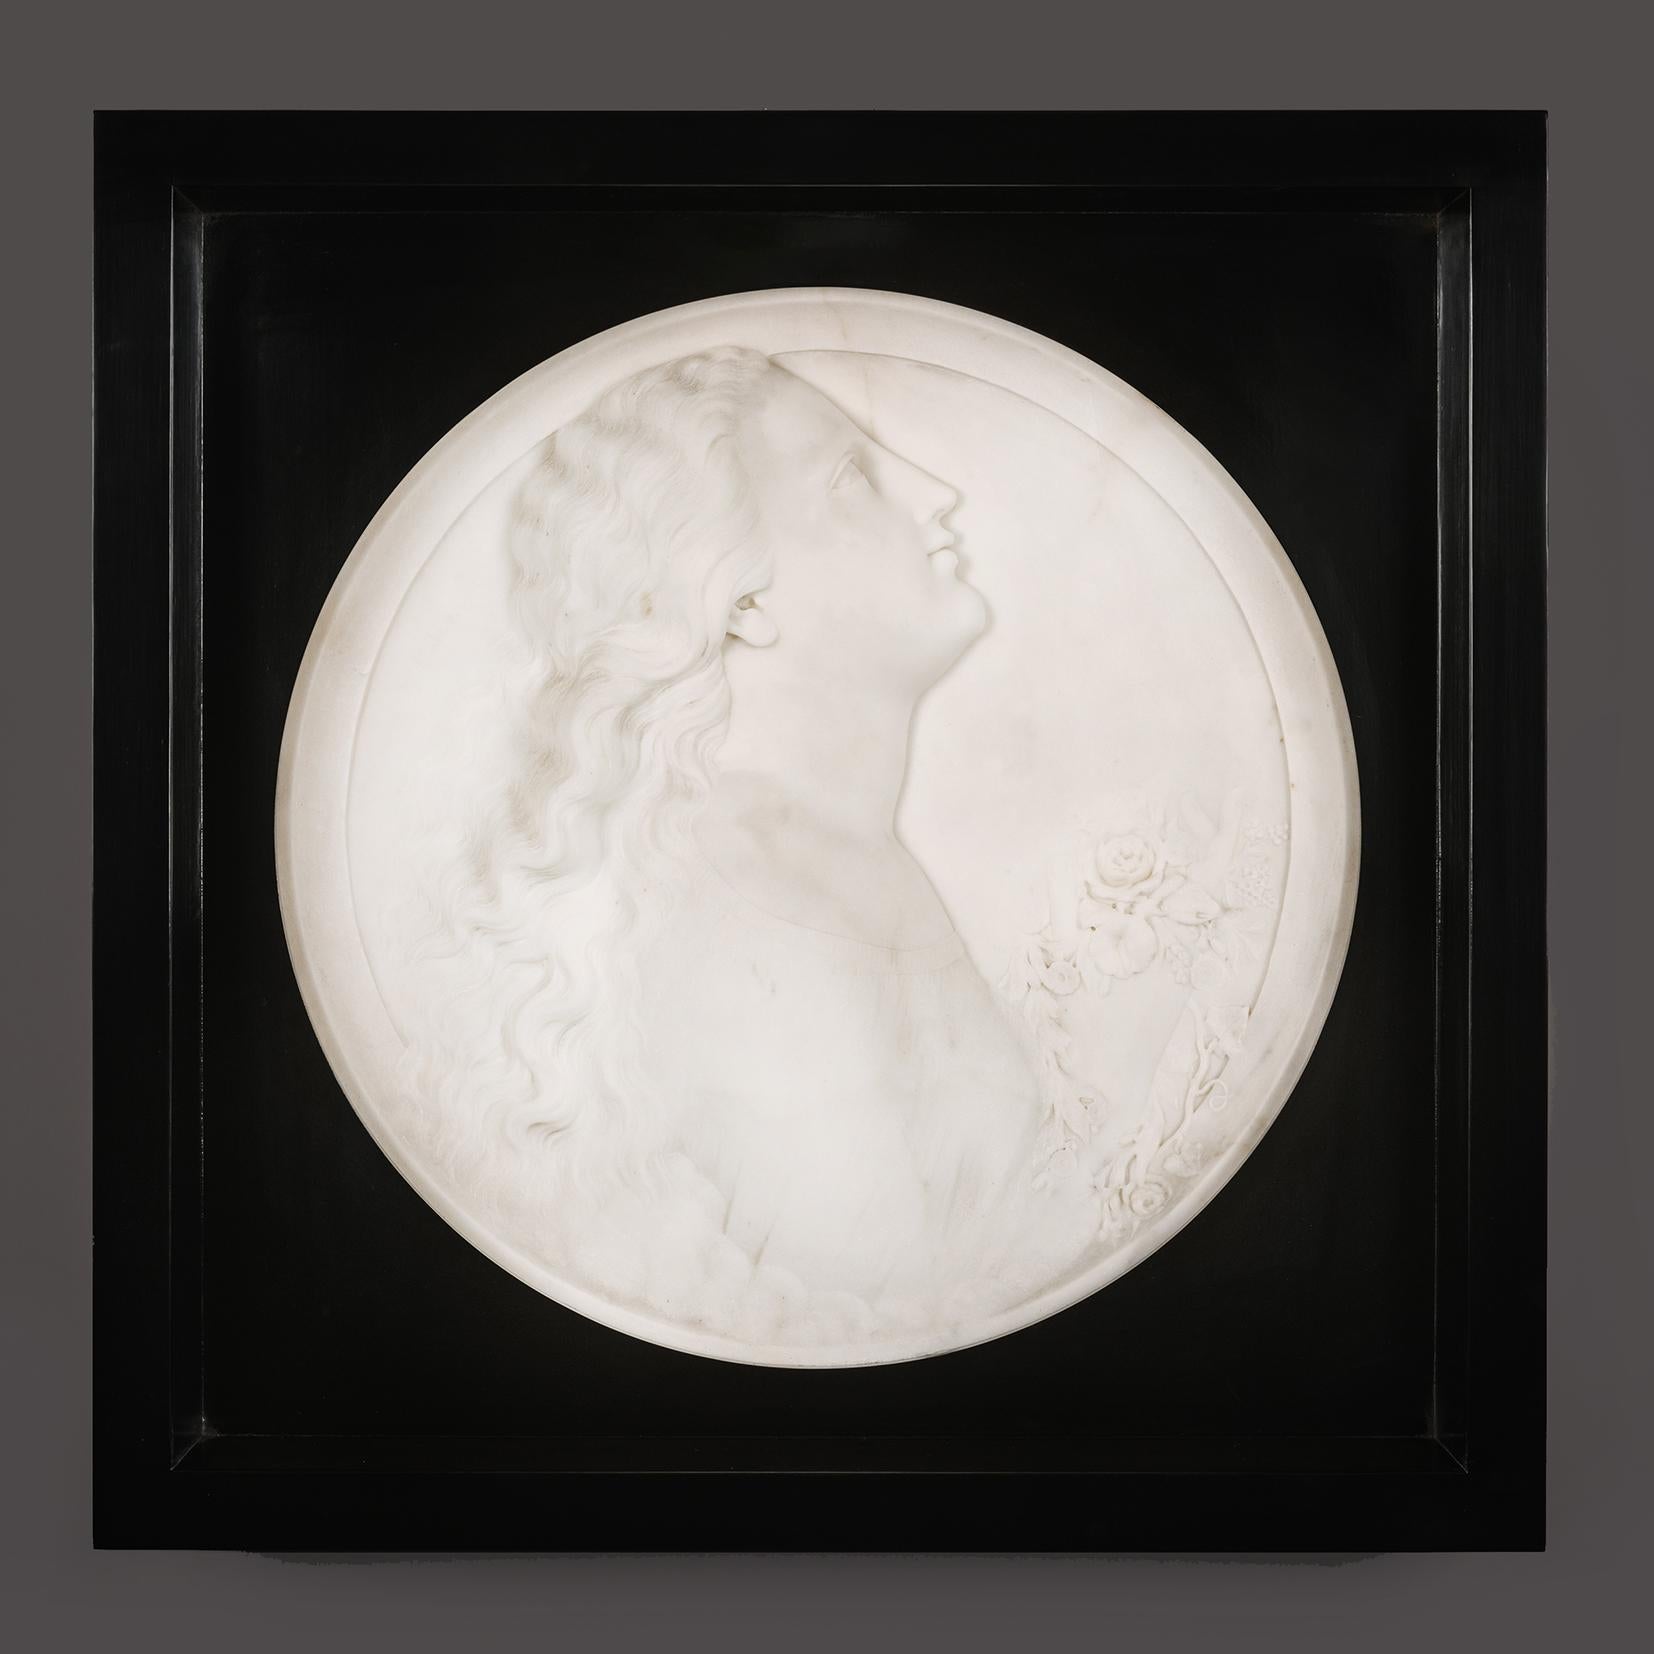 Paire de portraits de femmes en marbre blanc représentant le matin et le soir, par Madison Colby (américain, 1842-1871).

Marbre statuaire blanc.

M-One